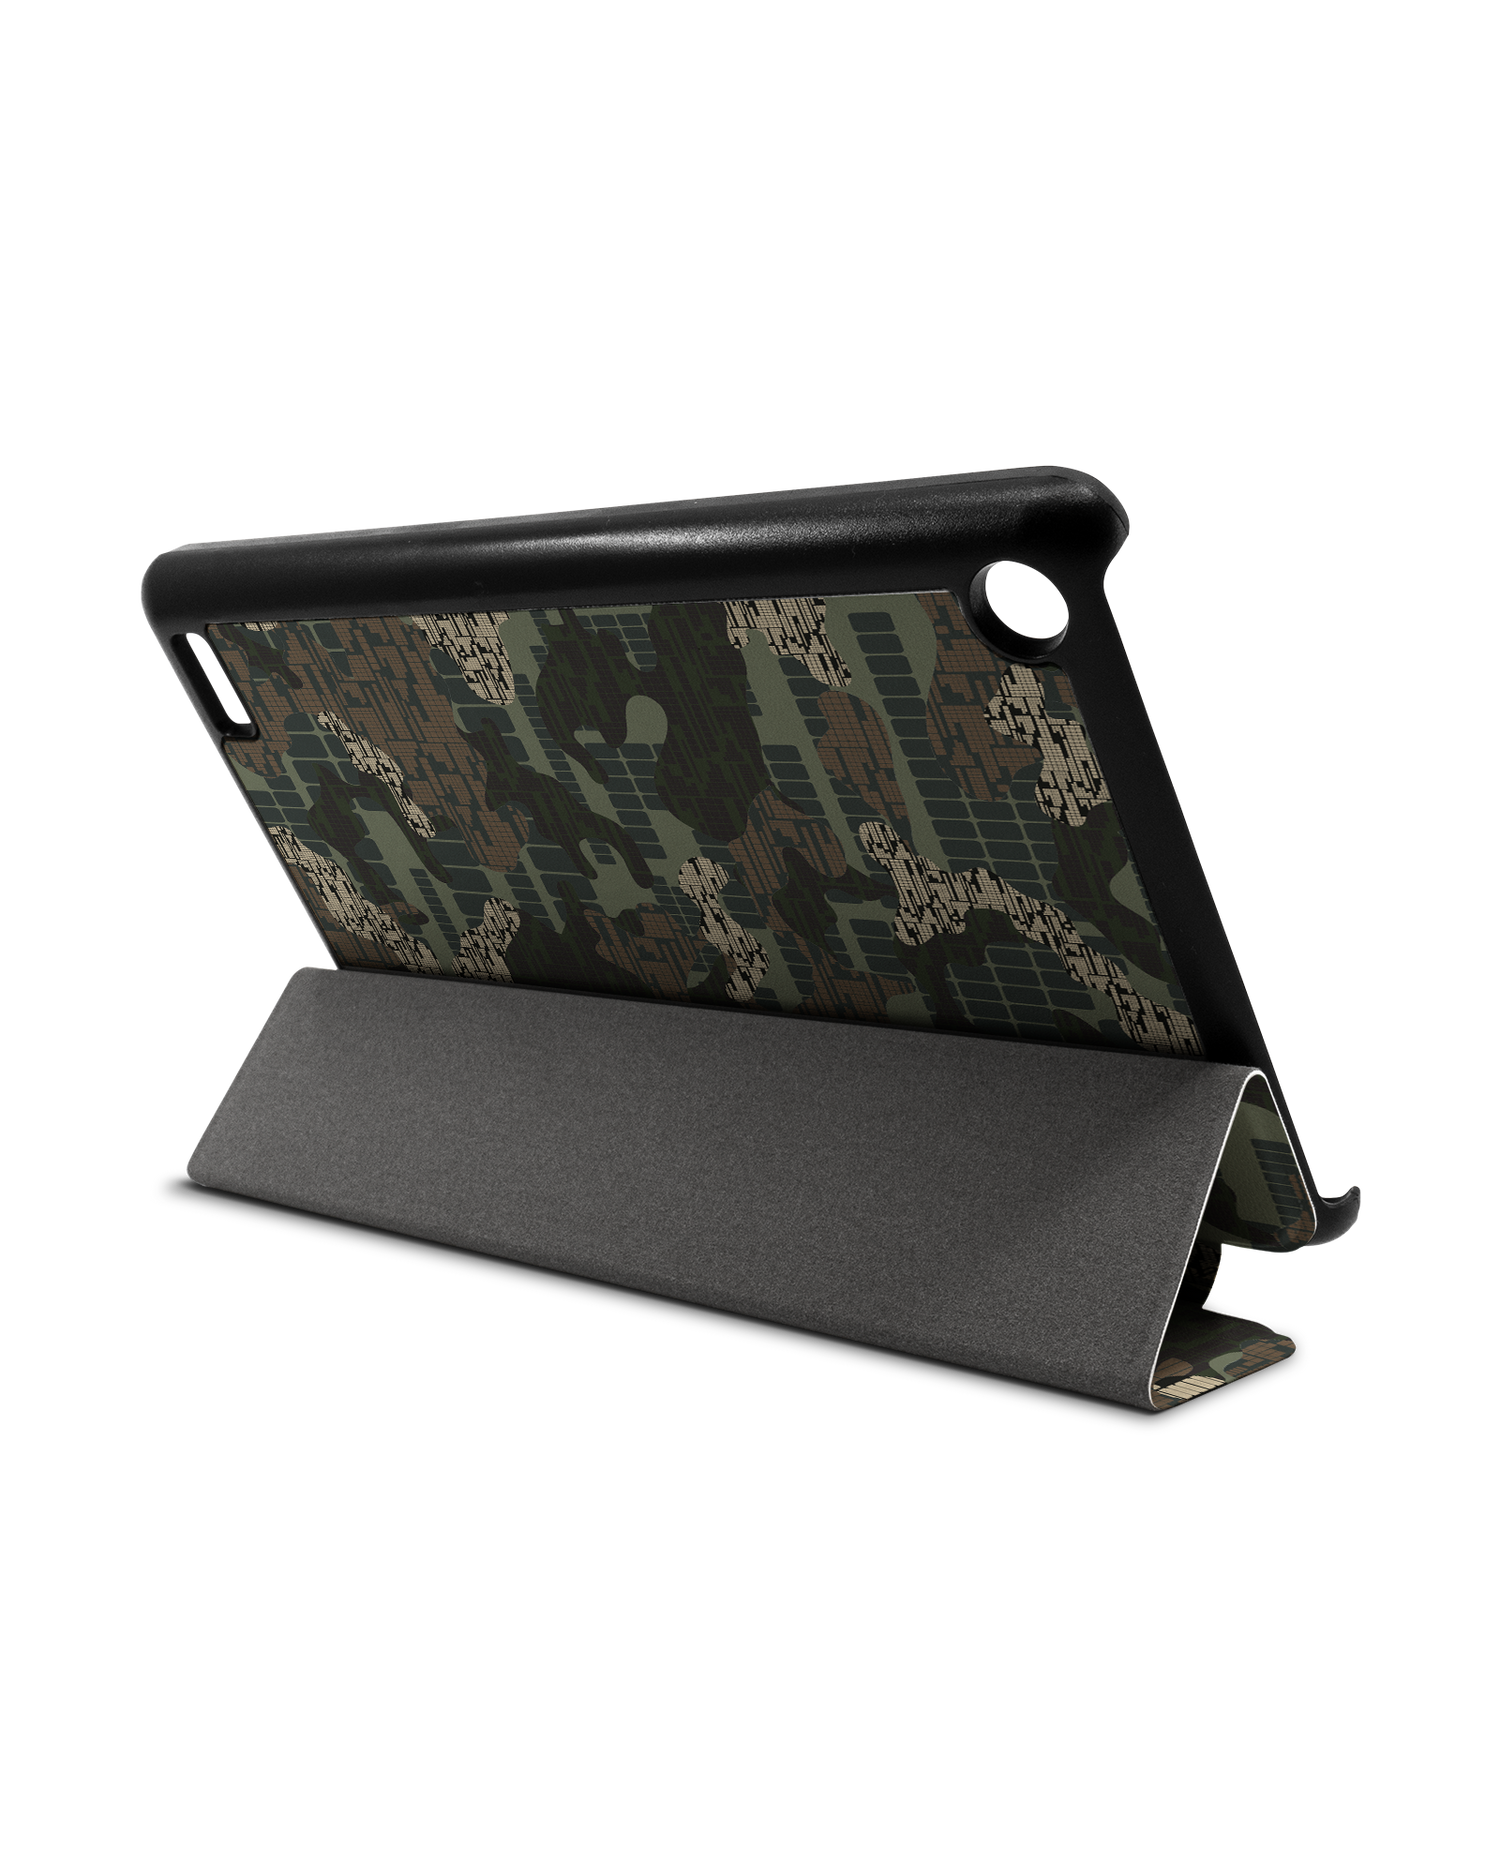 Green Camo Mix Tablet Smart Case für Amazon Fire 7: Aufgestellt im Querformat